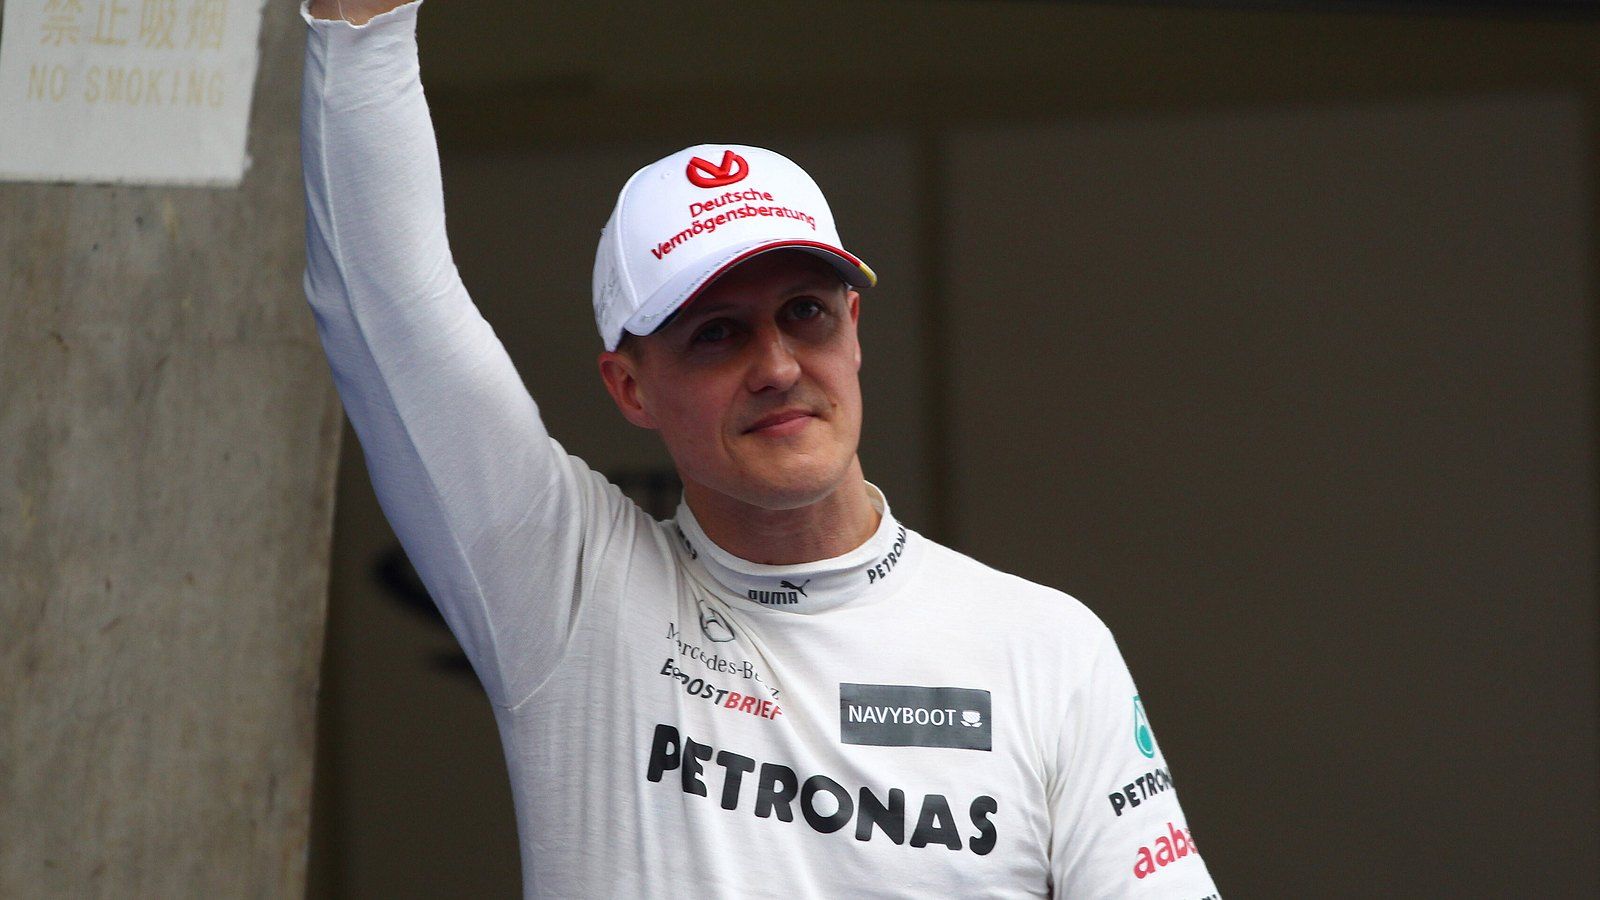  Michael Schumacher Hintergrundbild 1600x900. Michael Schumacher: Emotionale Erinnerungen rühren die Fans